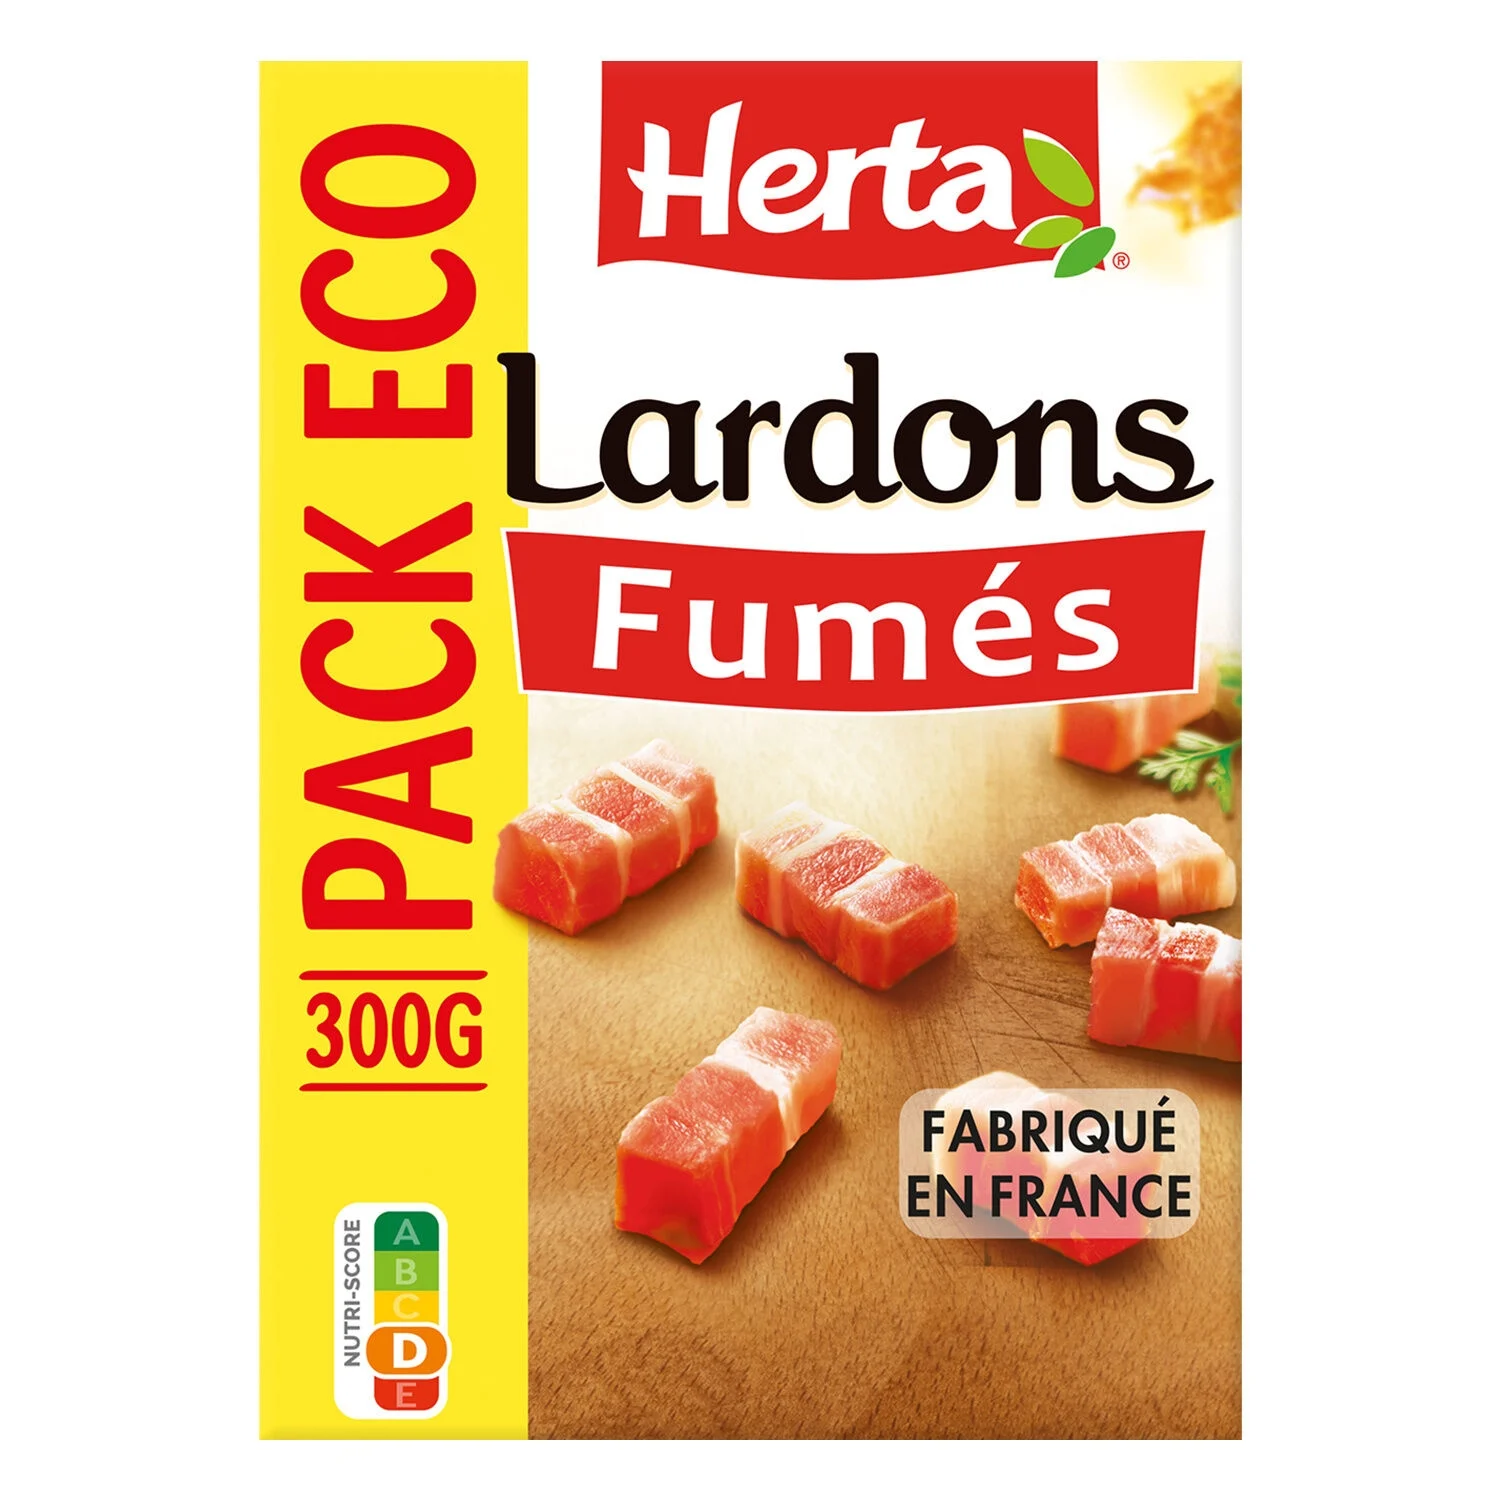 300g Lardons Fumes Herta